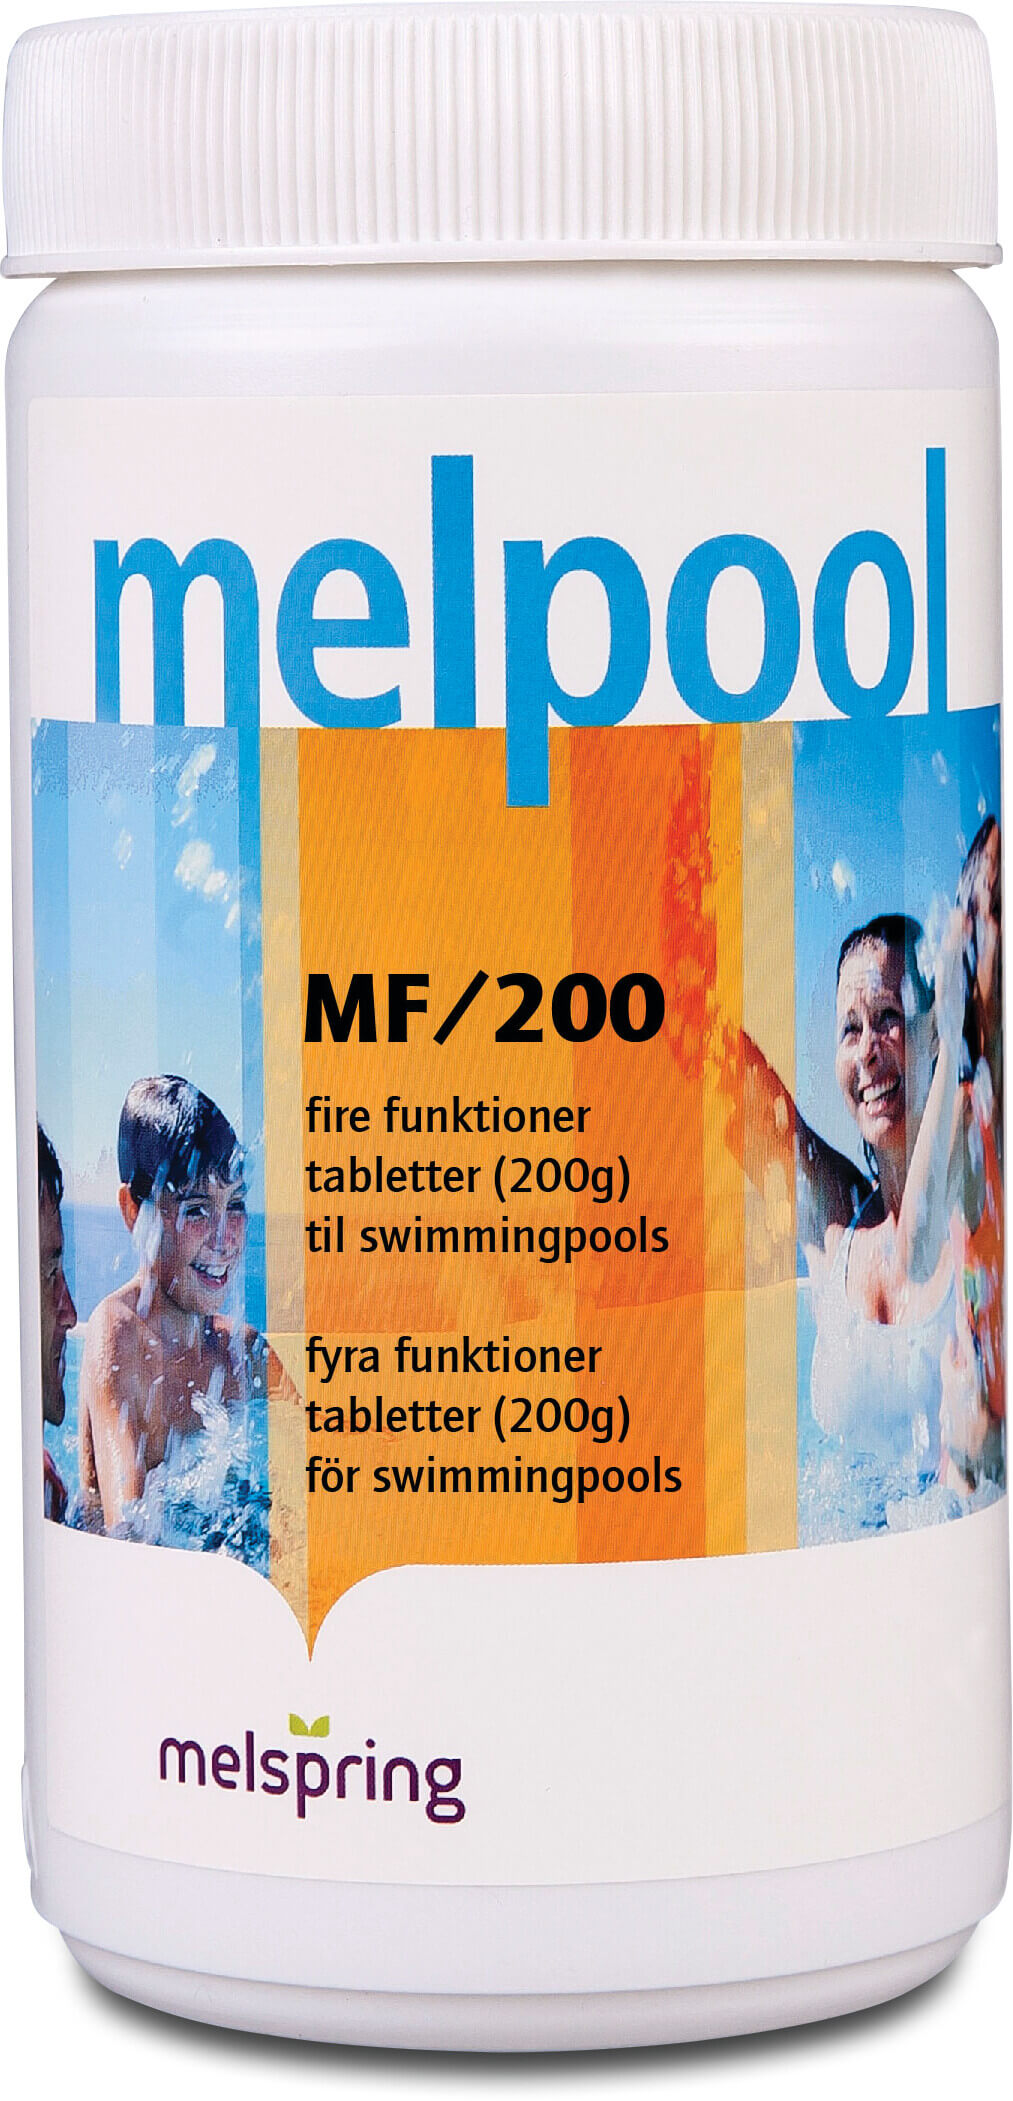 Melpool MF/200 tabletter 1000g type 200g tablet